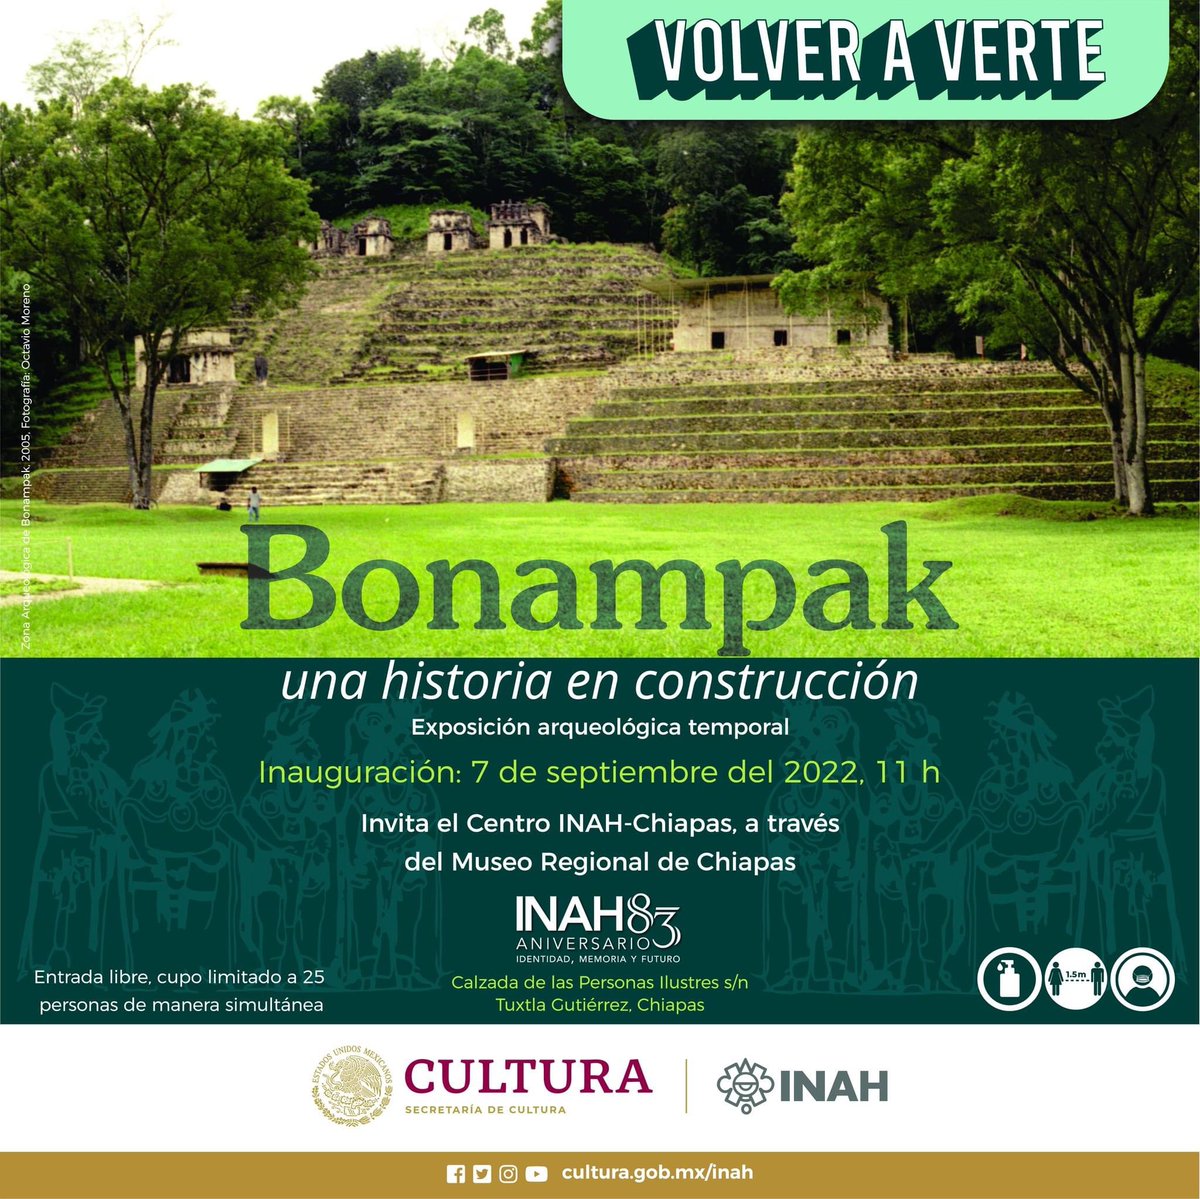 #TwitteandoAprendí que el @MuseoRegionalCH inaugura la exposición temporal 'Bonampak. Una historia en construcción'. 📅 7 de septiembre en el marco del 38 Aniversario del Museo Regional de Chiapas 🕙 11:00 horas.